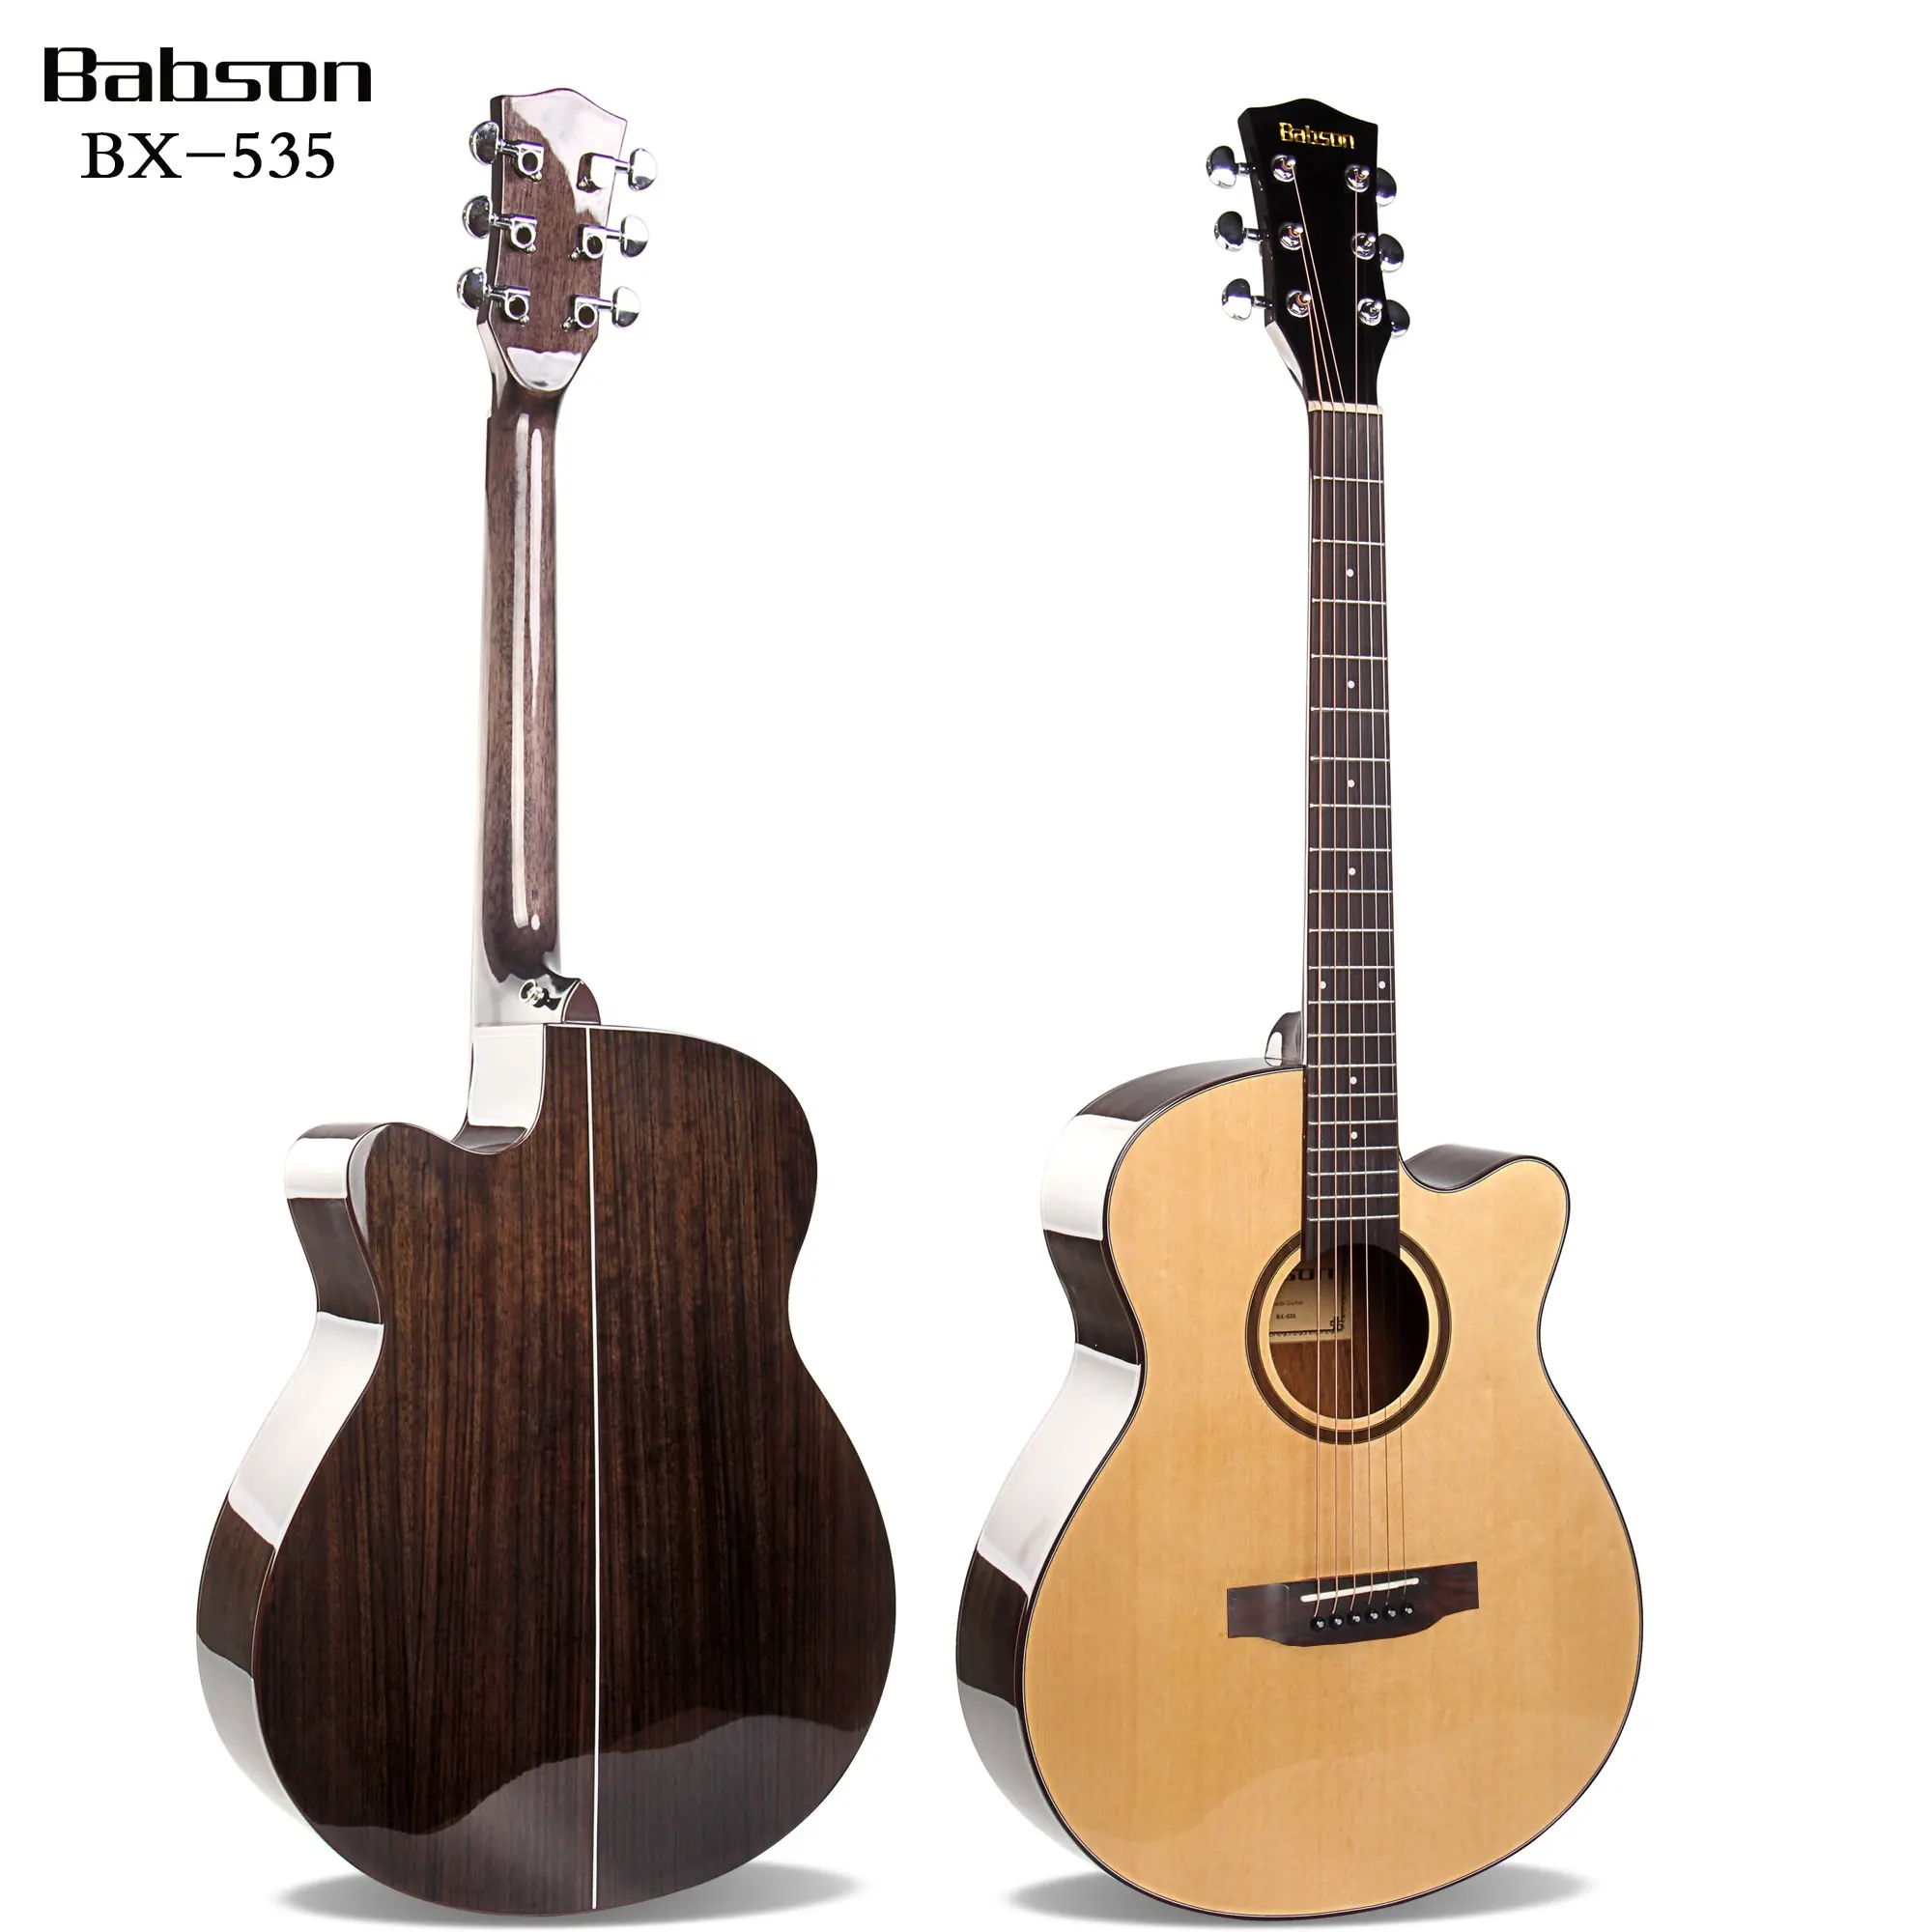 BX-535-40 Китай Горячая продажа гитары завод производитель 40 дюймов акустической гитары оптом